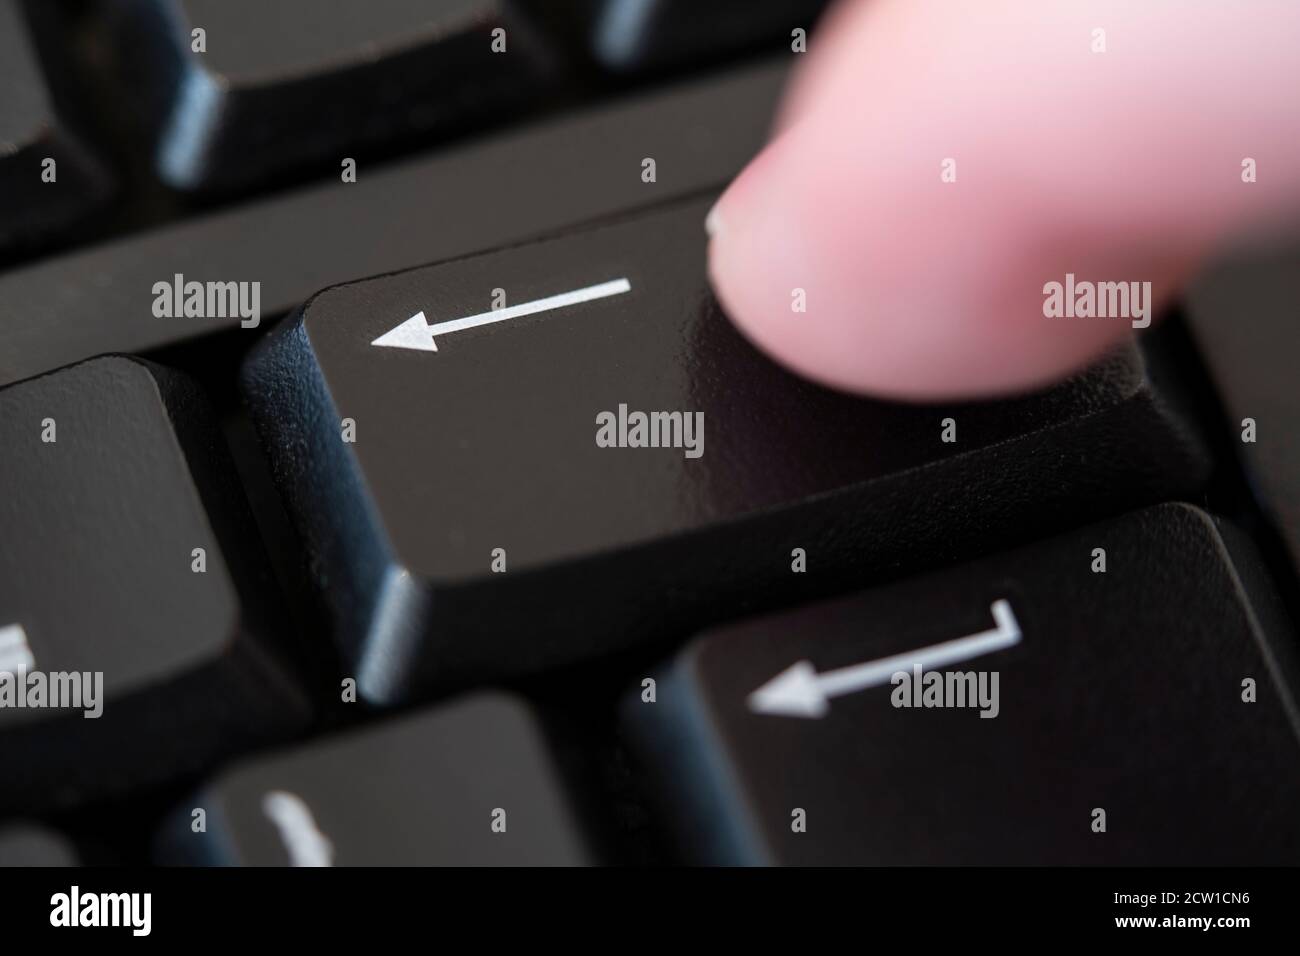 Ein Makro Nahaufnahme eines Fingers, der die Rücktaste auf einer Computertastatur drückt. Konzept: Löschen, entfernen, abbrechen, löschen, Kultur abbrechen, gelöscht Stockfoto